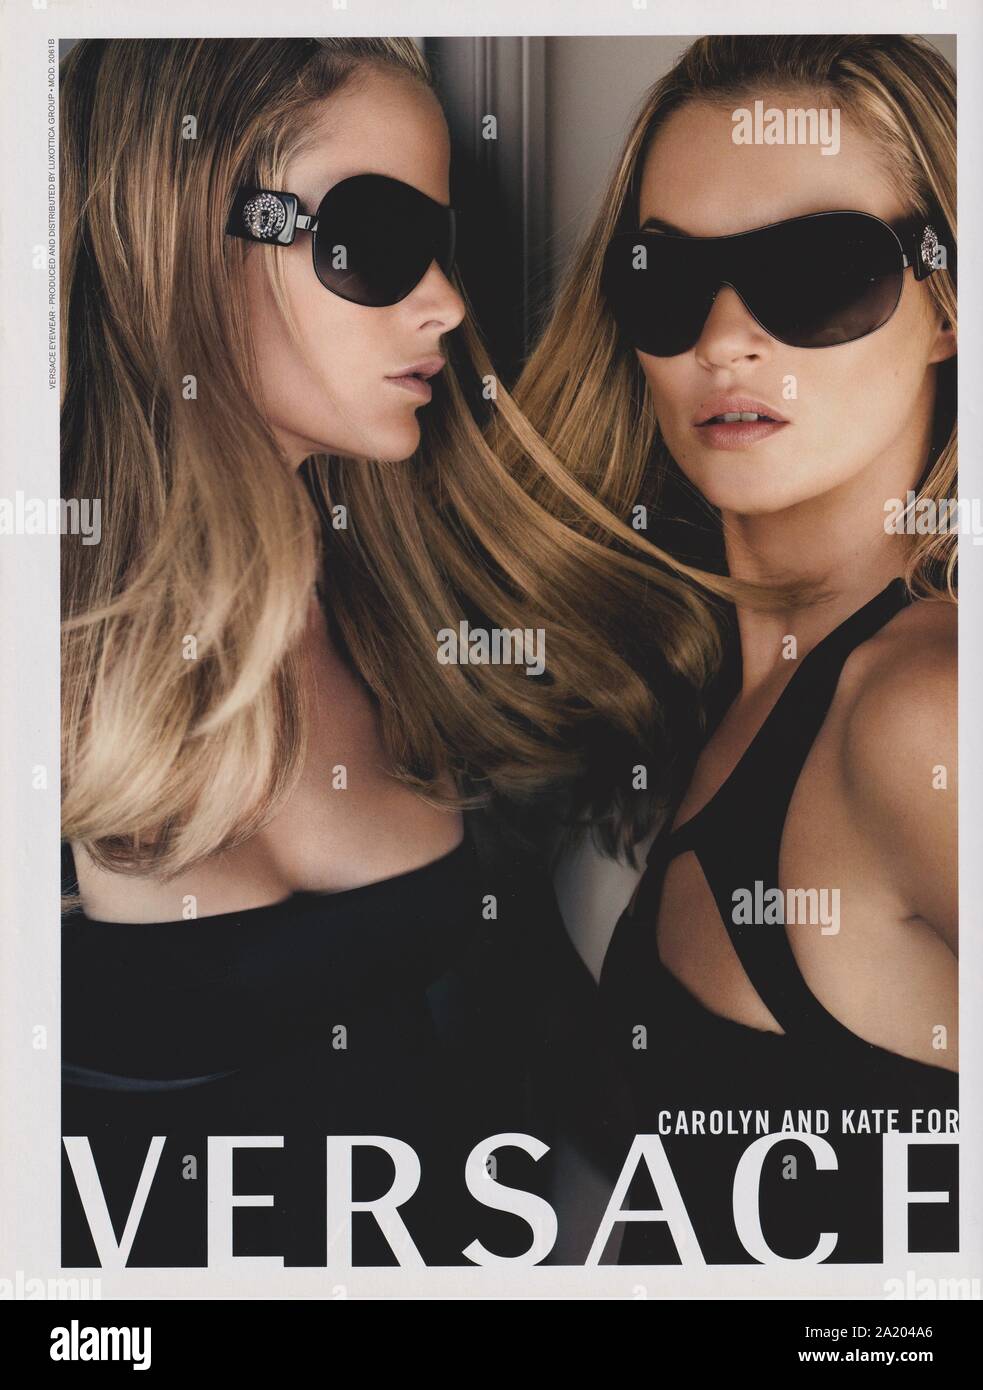 Affiche publicitaire MAISON de mode VERSACE avec Kate Moss, Carolyn Murphy dans le magazine papier de 2007, publicité, publicité créative VERSACE 2000 Banque D'Images